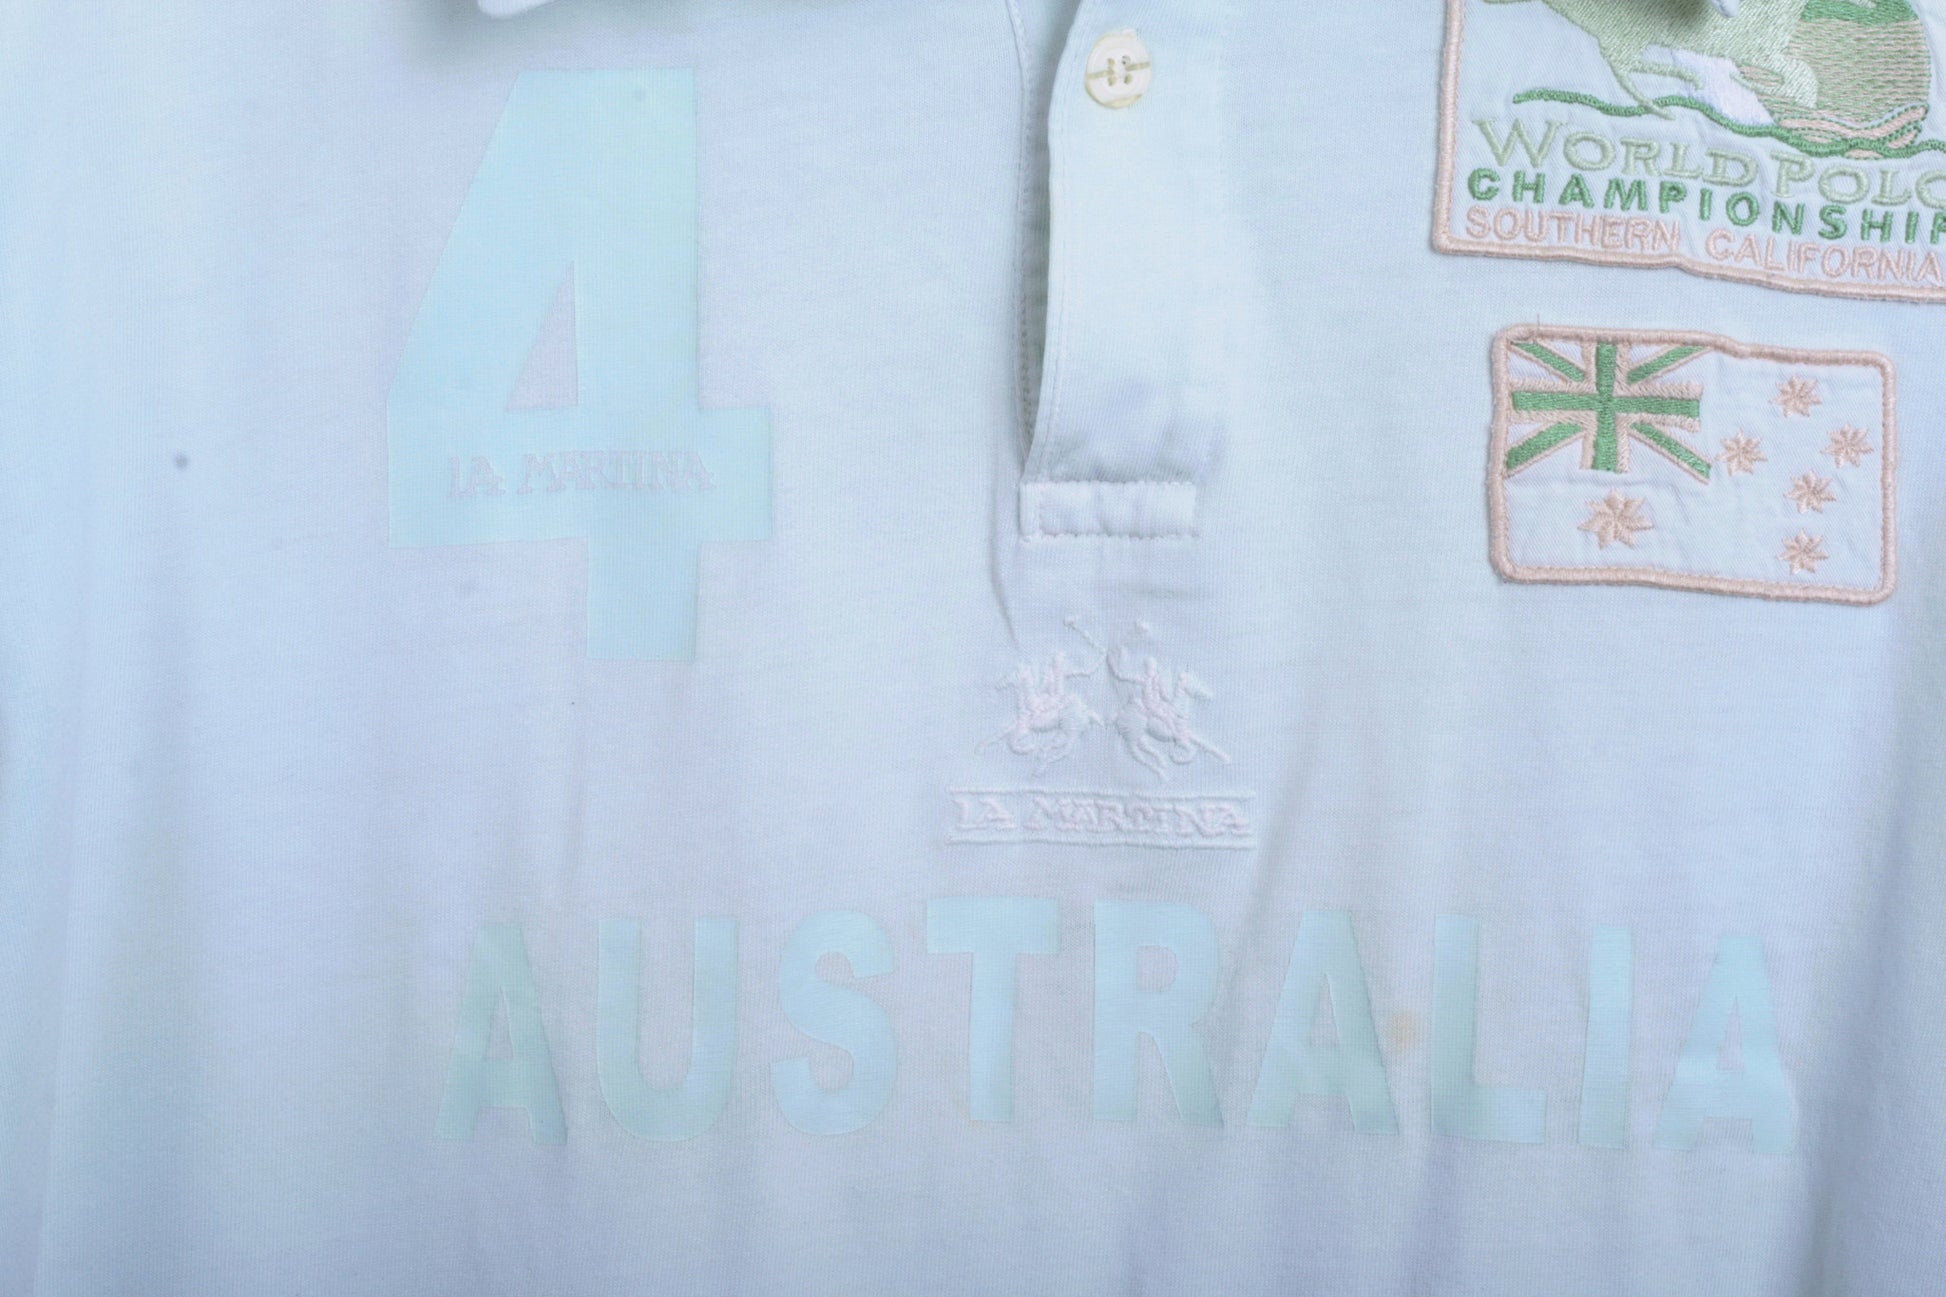 La Martina Mens 2XL Polo Shirt Australia Mint Cotton Top - RetrospectClothes